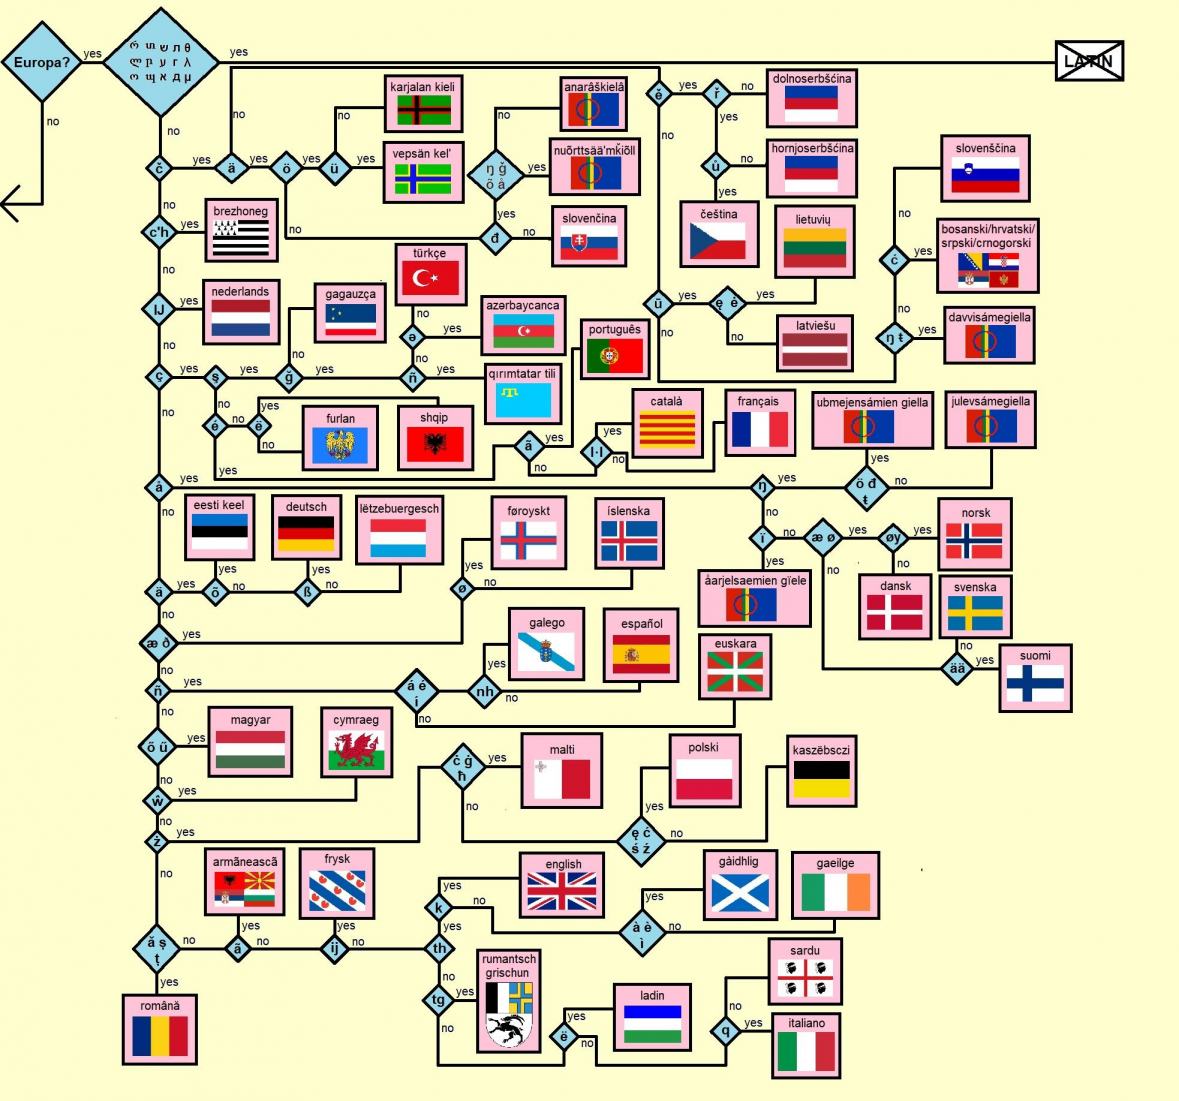 Obrázek europen languages guide